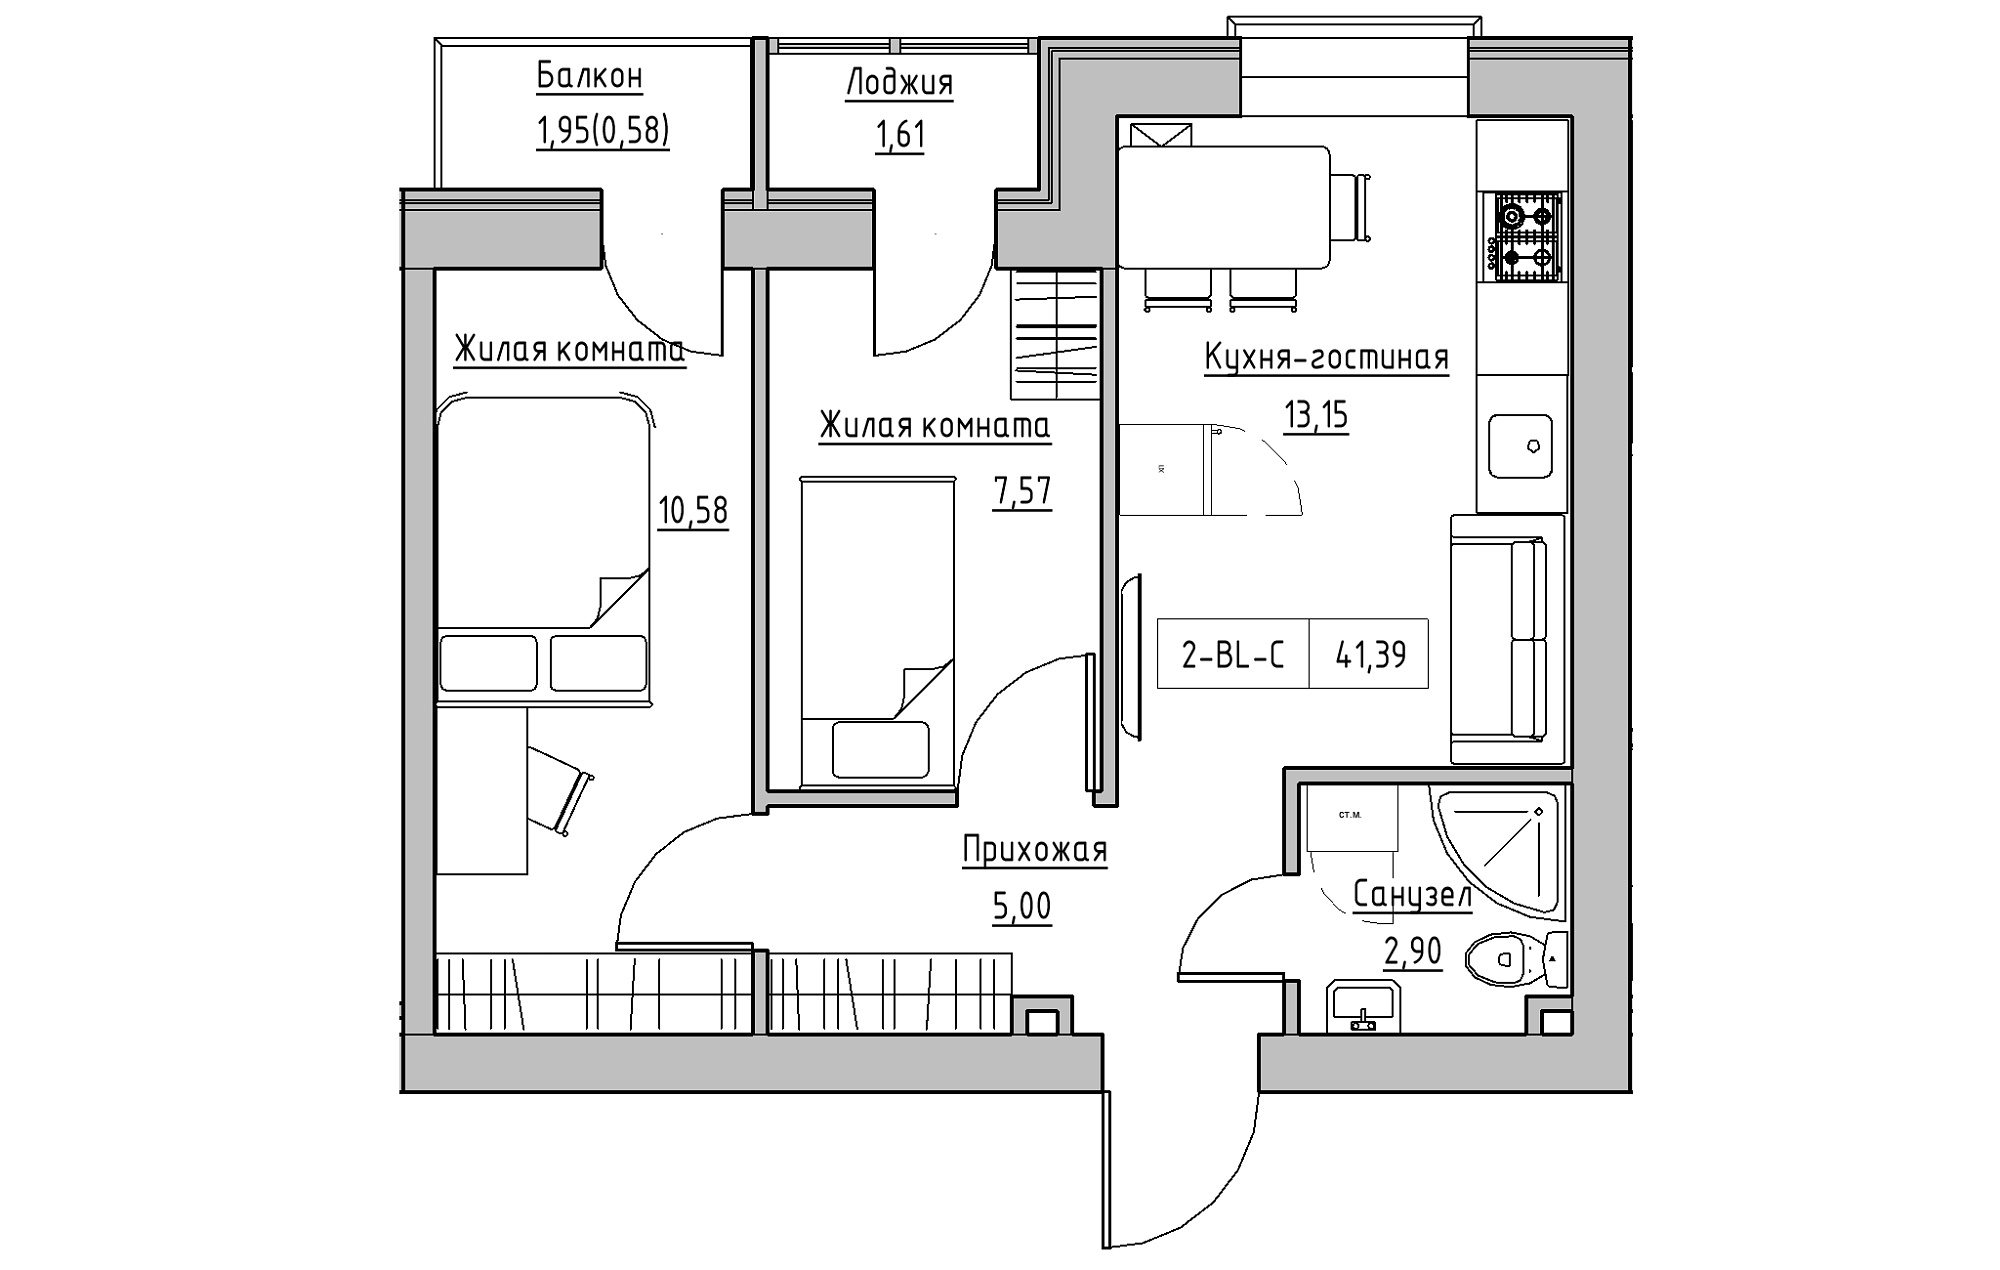 Планування 2-к квартира площею 41.39м2, KS-018-02/0005.